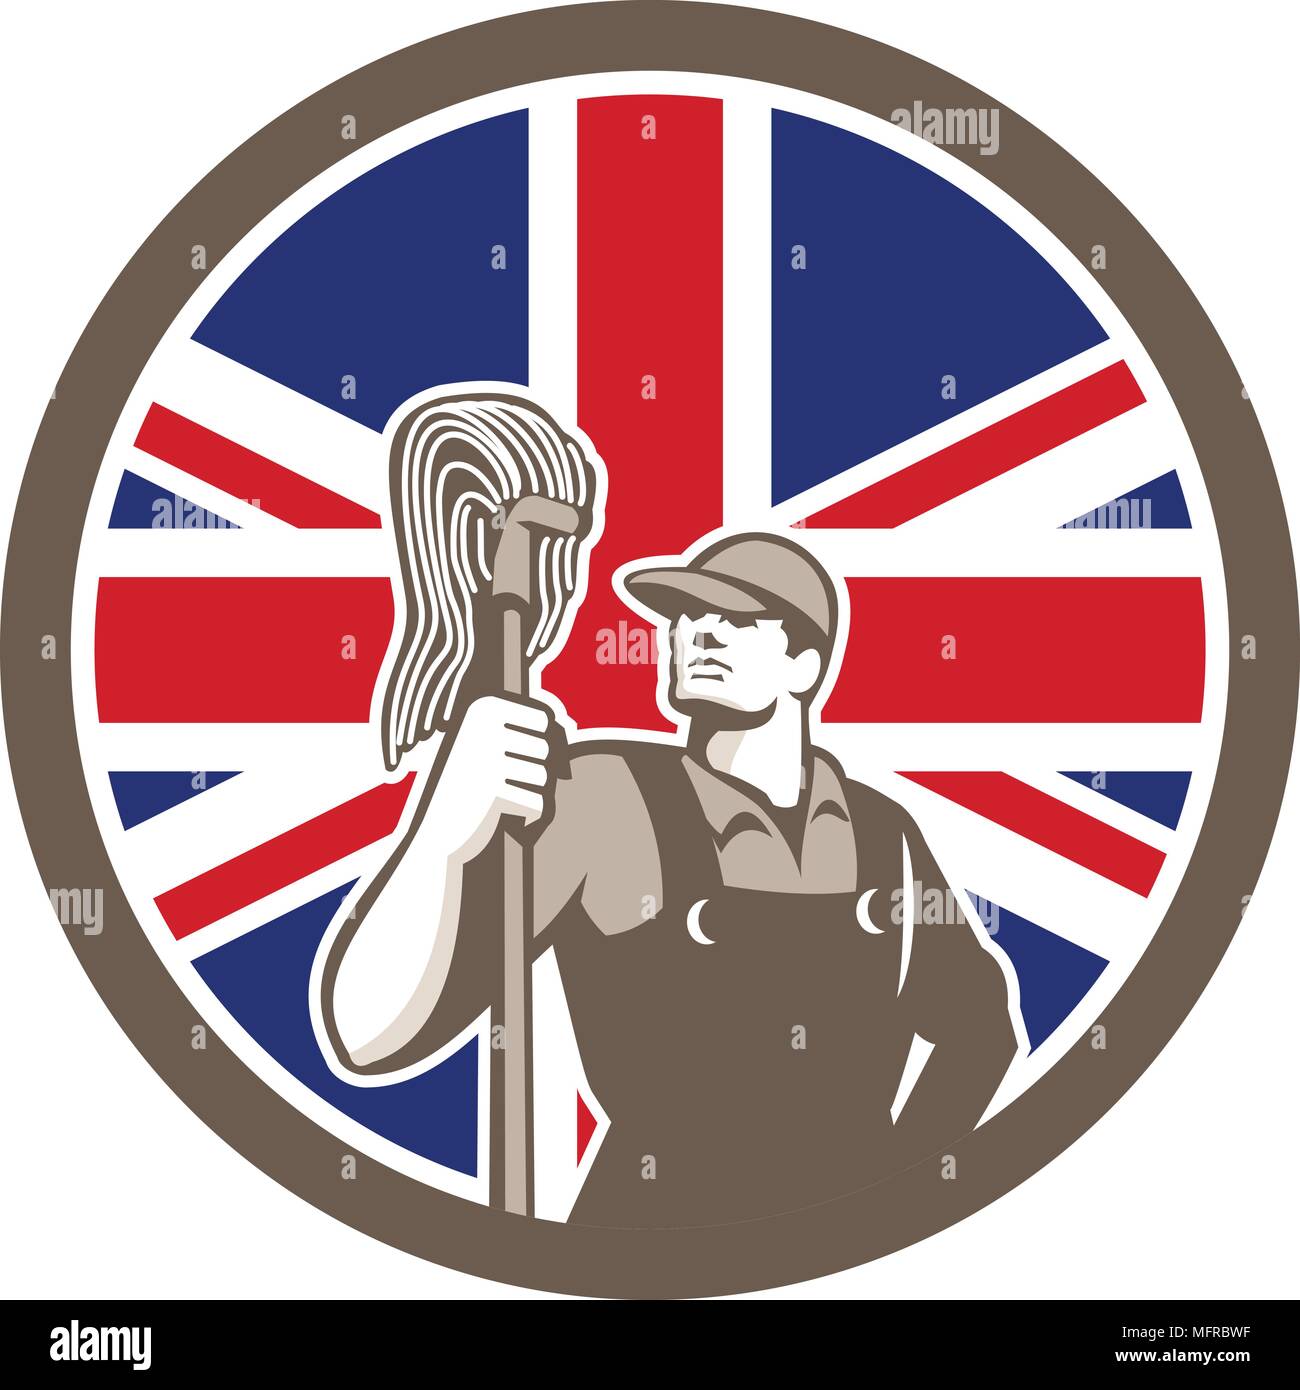 Style rétro icône illustration d'un nettoyant industriel ou des services de nettoyage worker holding mop avec Royaume-uni UK, Great Brita Illustration de Vecteur